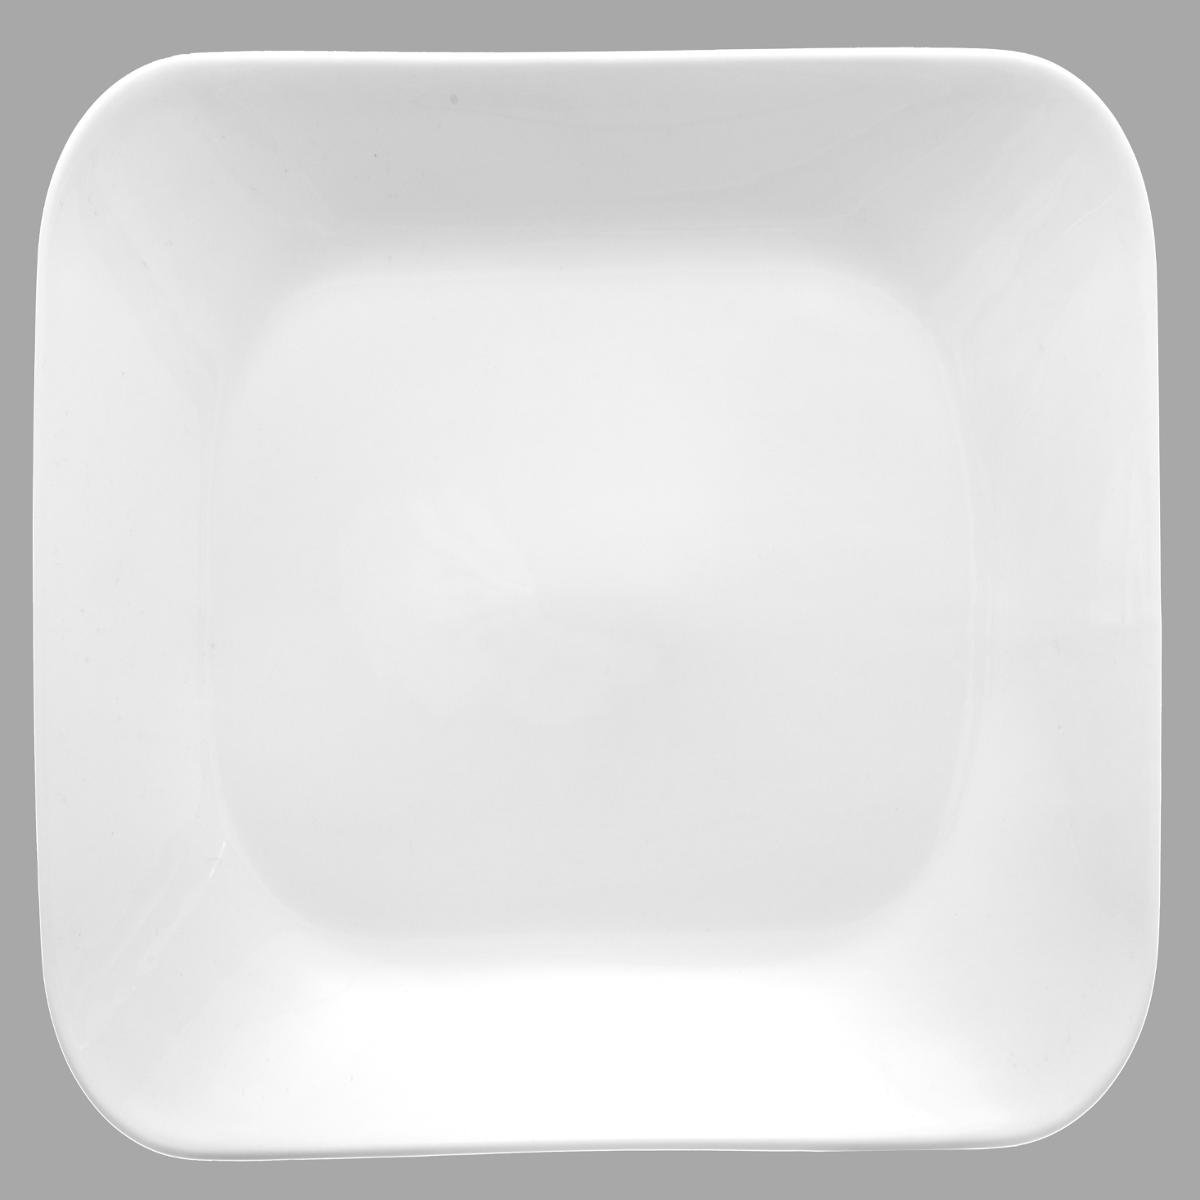 Assiette plate porcelaine blanche élégance